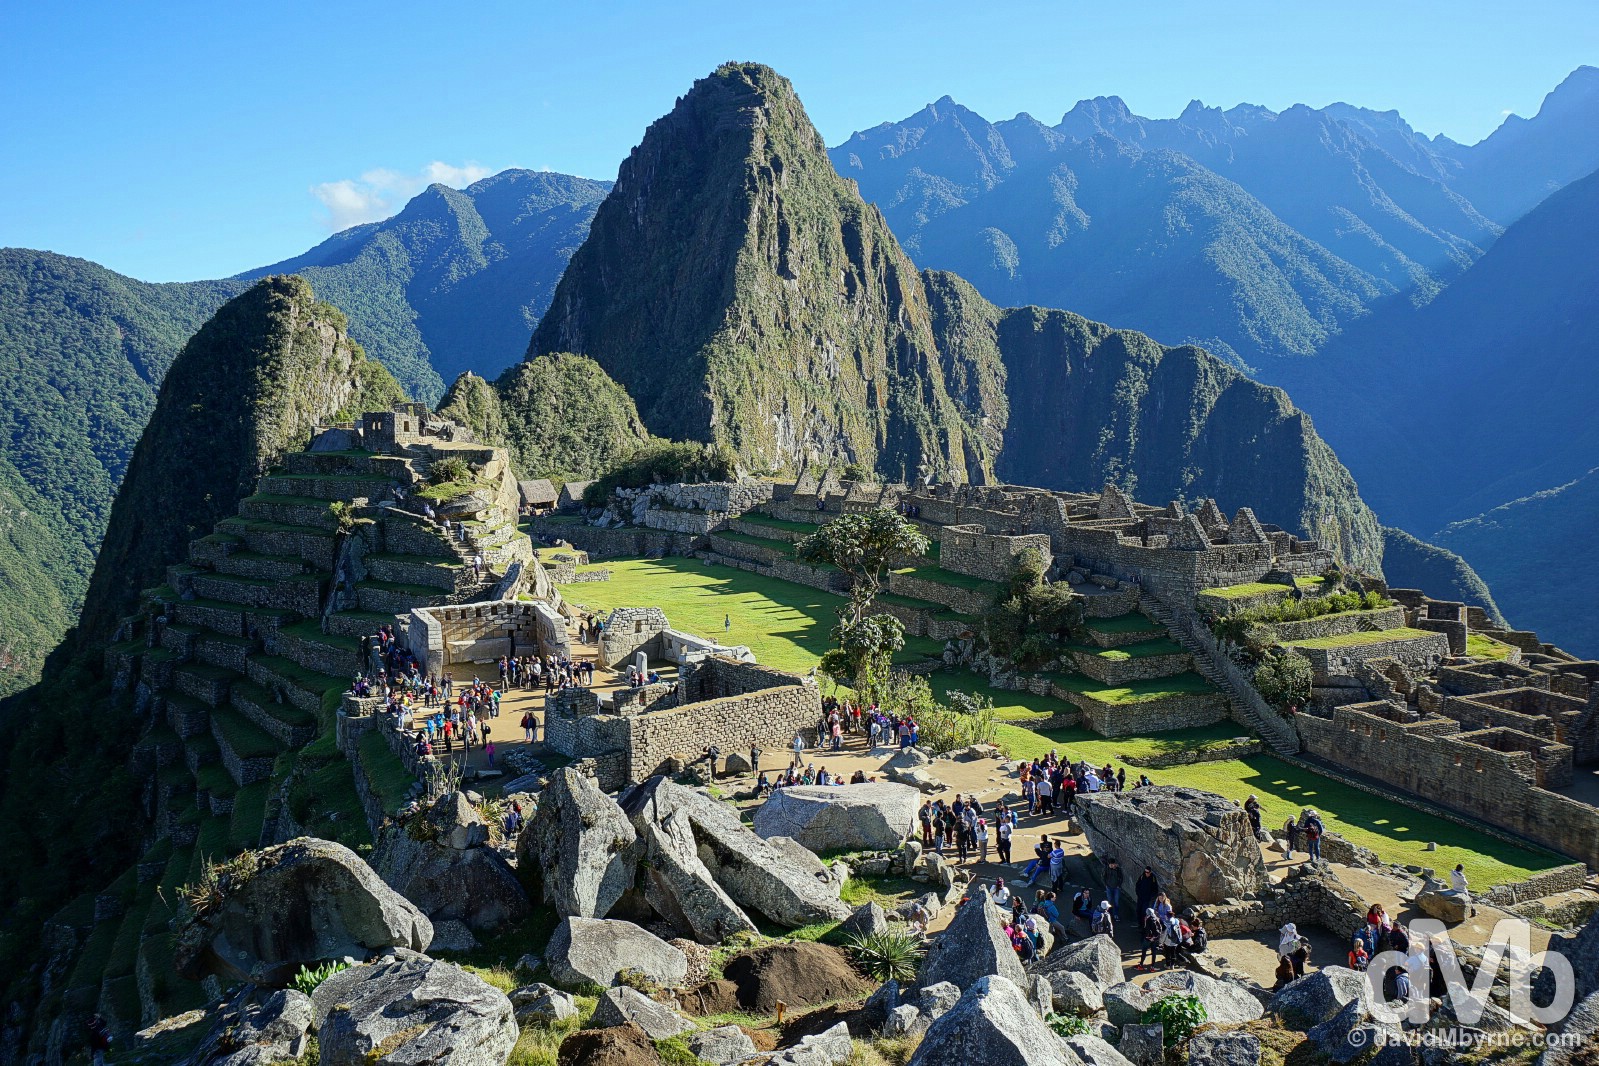 Early morning in Machu Picchu, Peru. August 15, 2015.